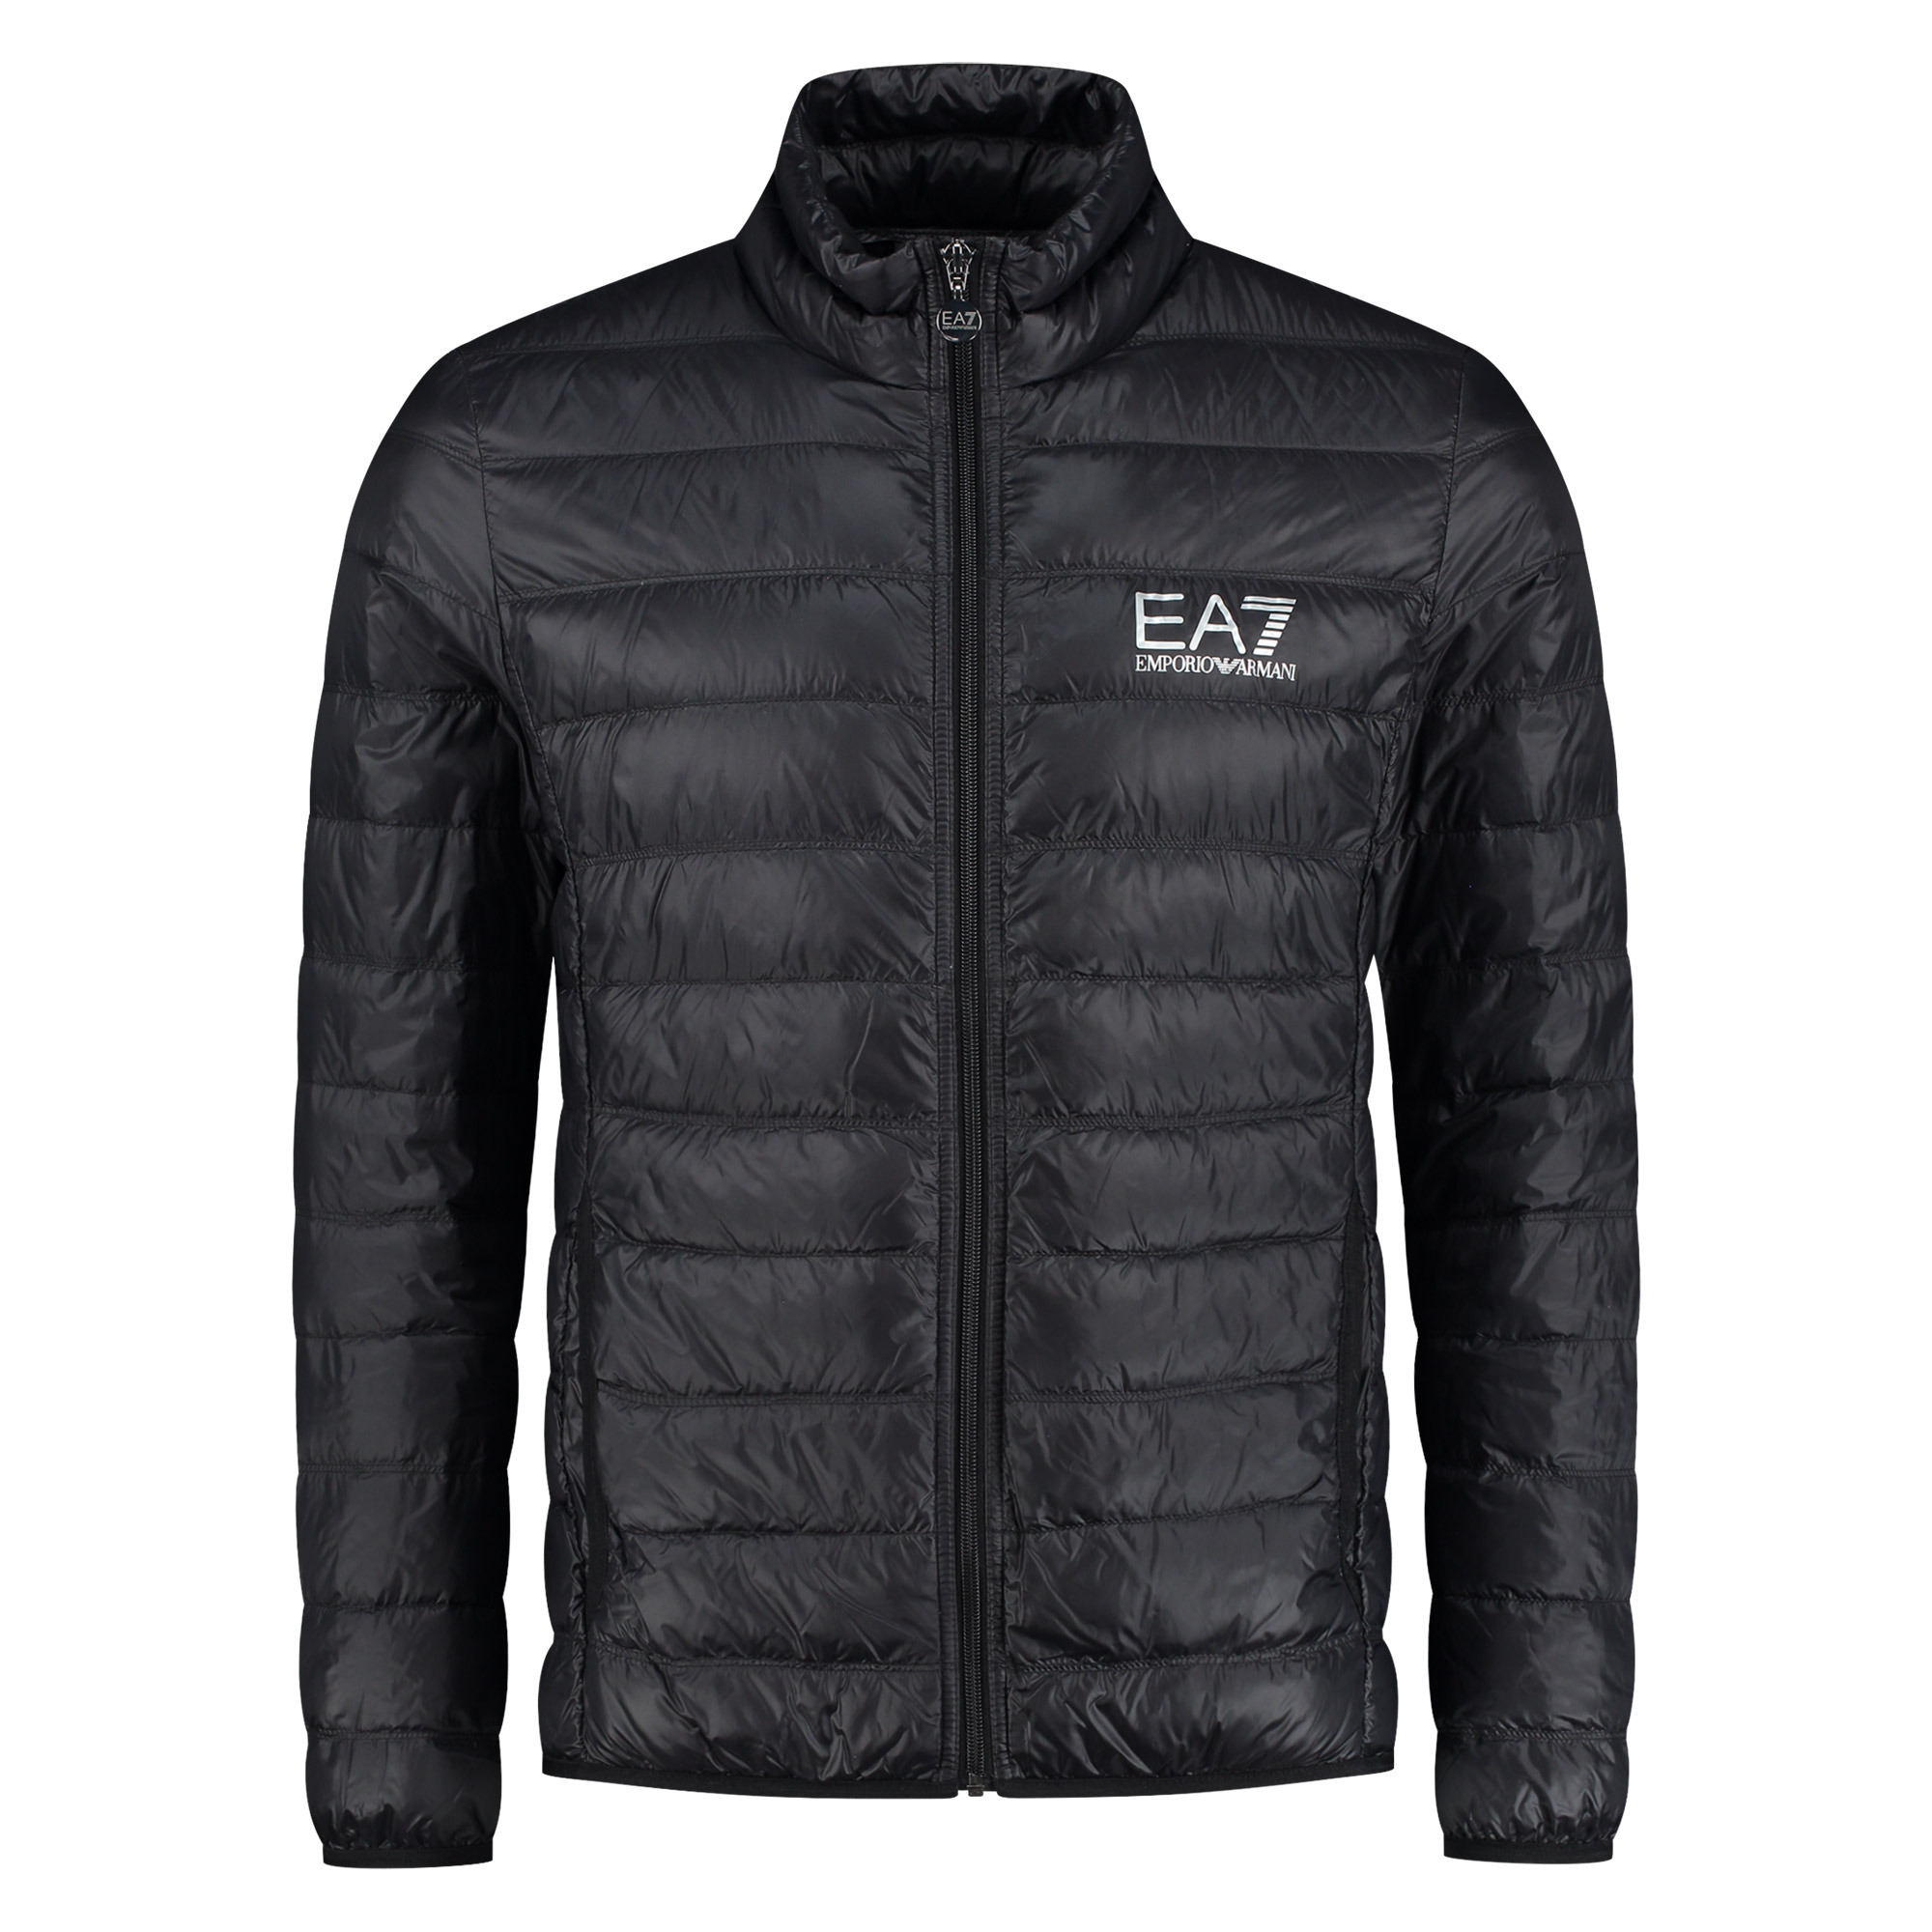 La veste EA7 Down Jacket pour hommes